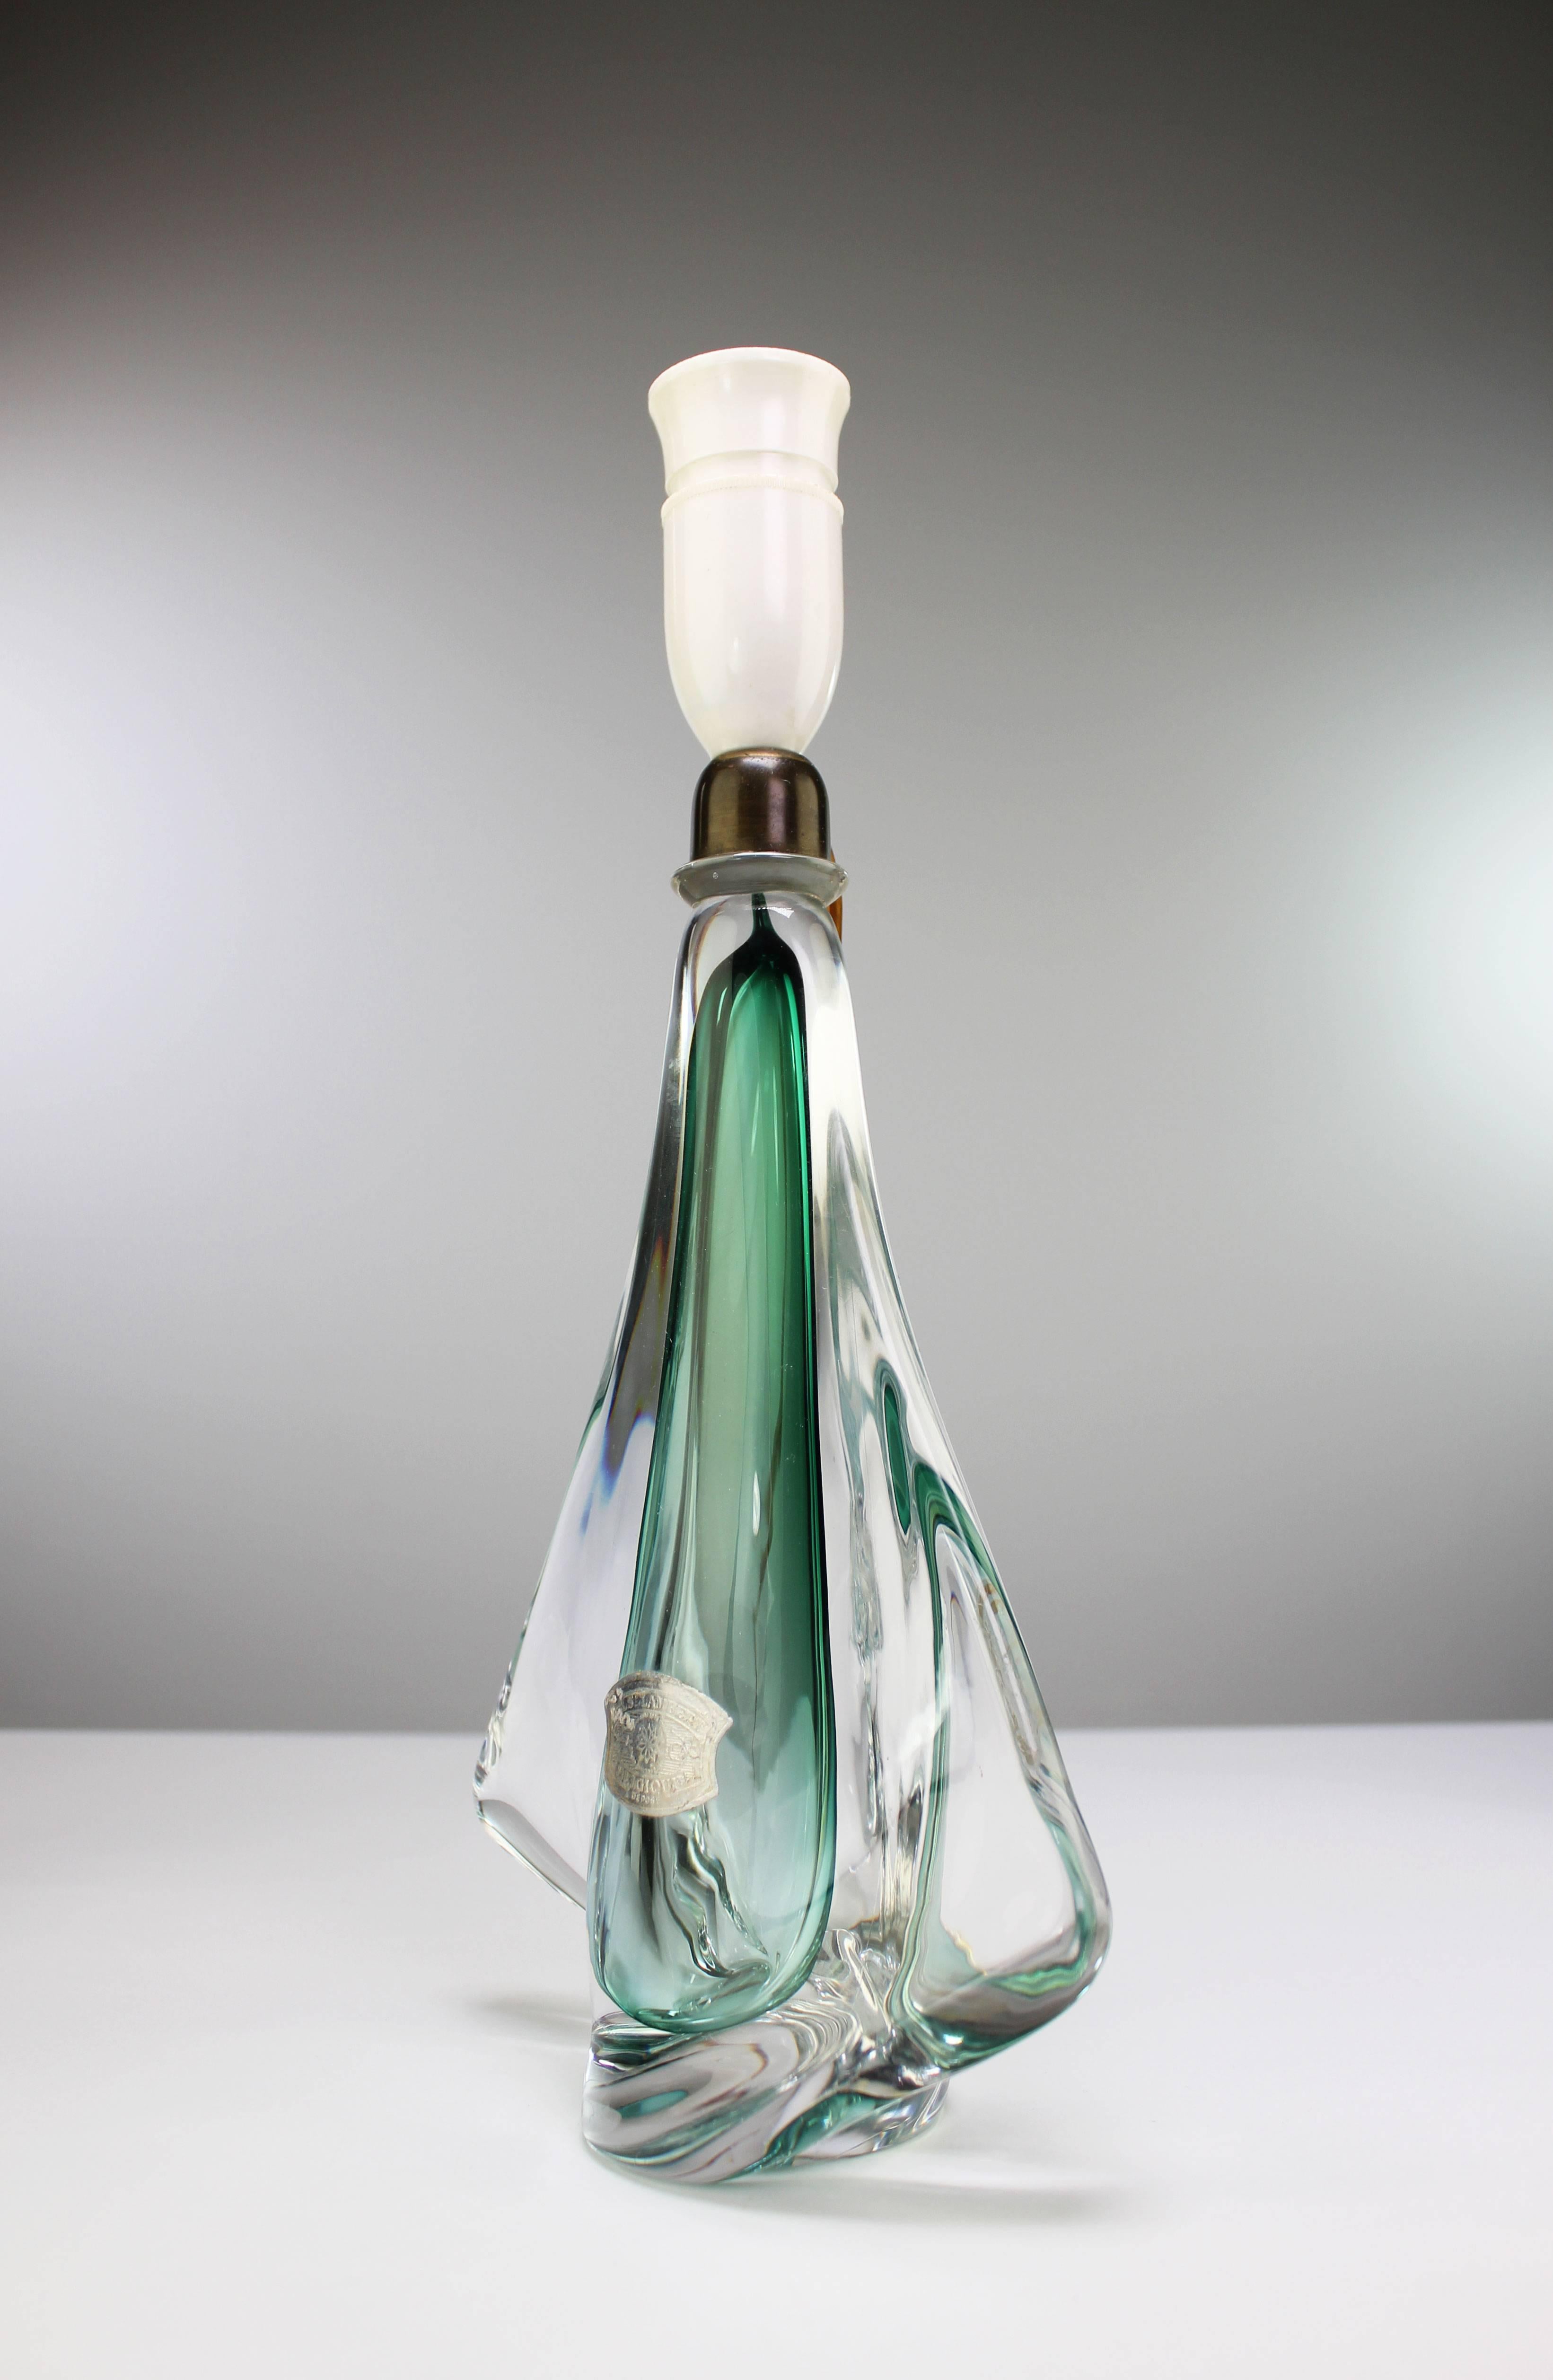 Lampe de table en cristal soufflé belge du milieu du siècle, en cristal vert émeraude enchâssé dans du cristal clair, par Val Saint Lambert. De forme organique avec une aile transparente de chaque côté et un sommet arrondi en laiton. Labellisé au